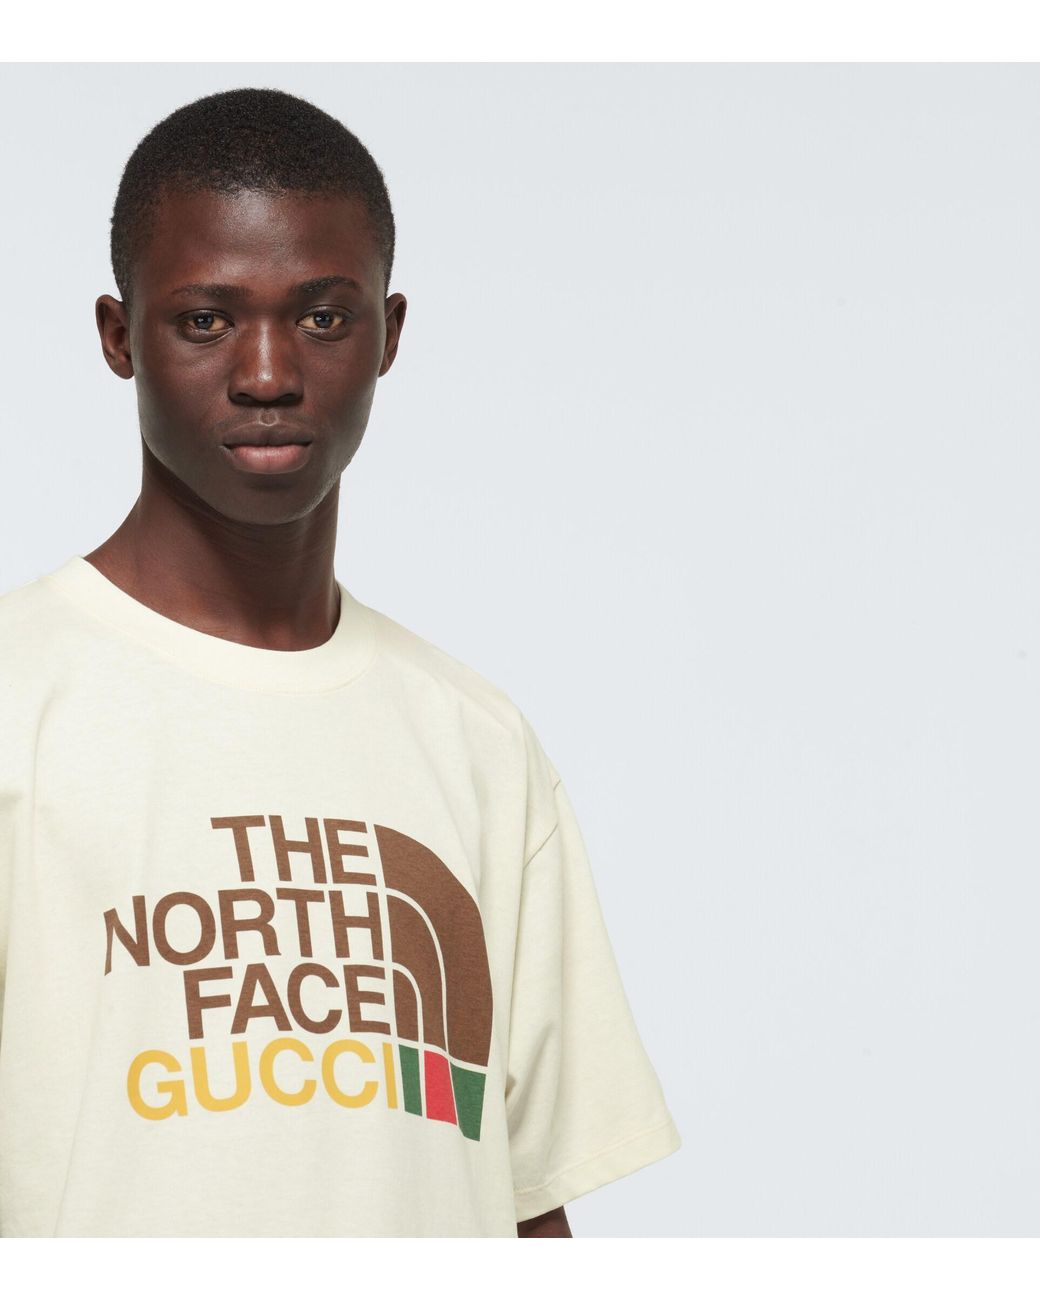 らくらくメ】 THE NORTH FACE GUCCI Tシャツ アイボリー Lサイズ